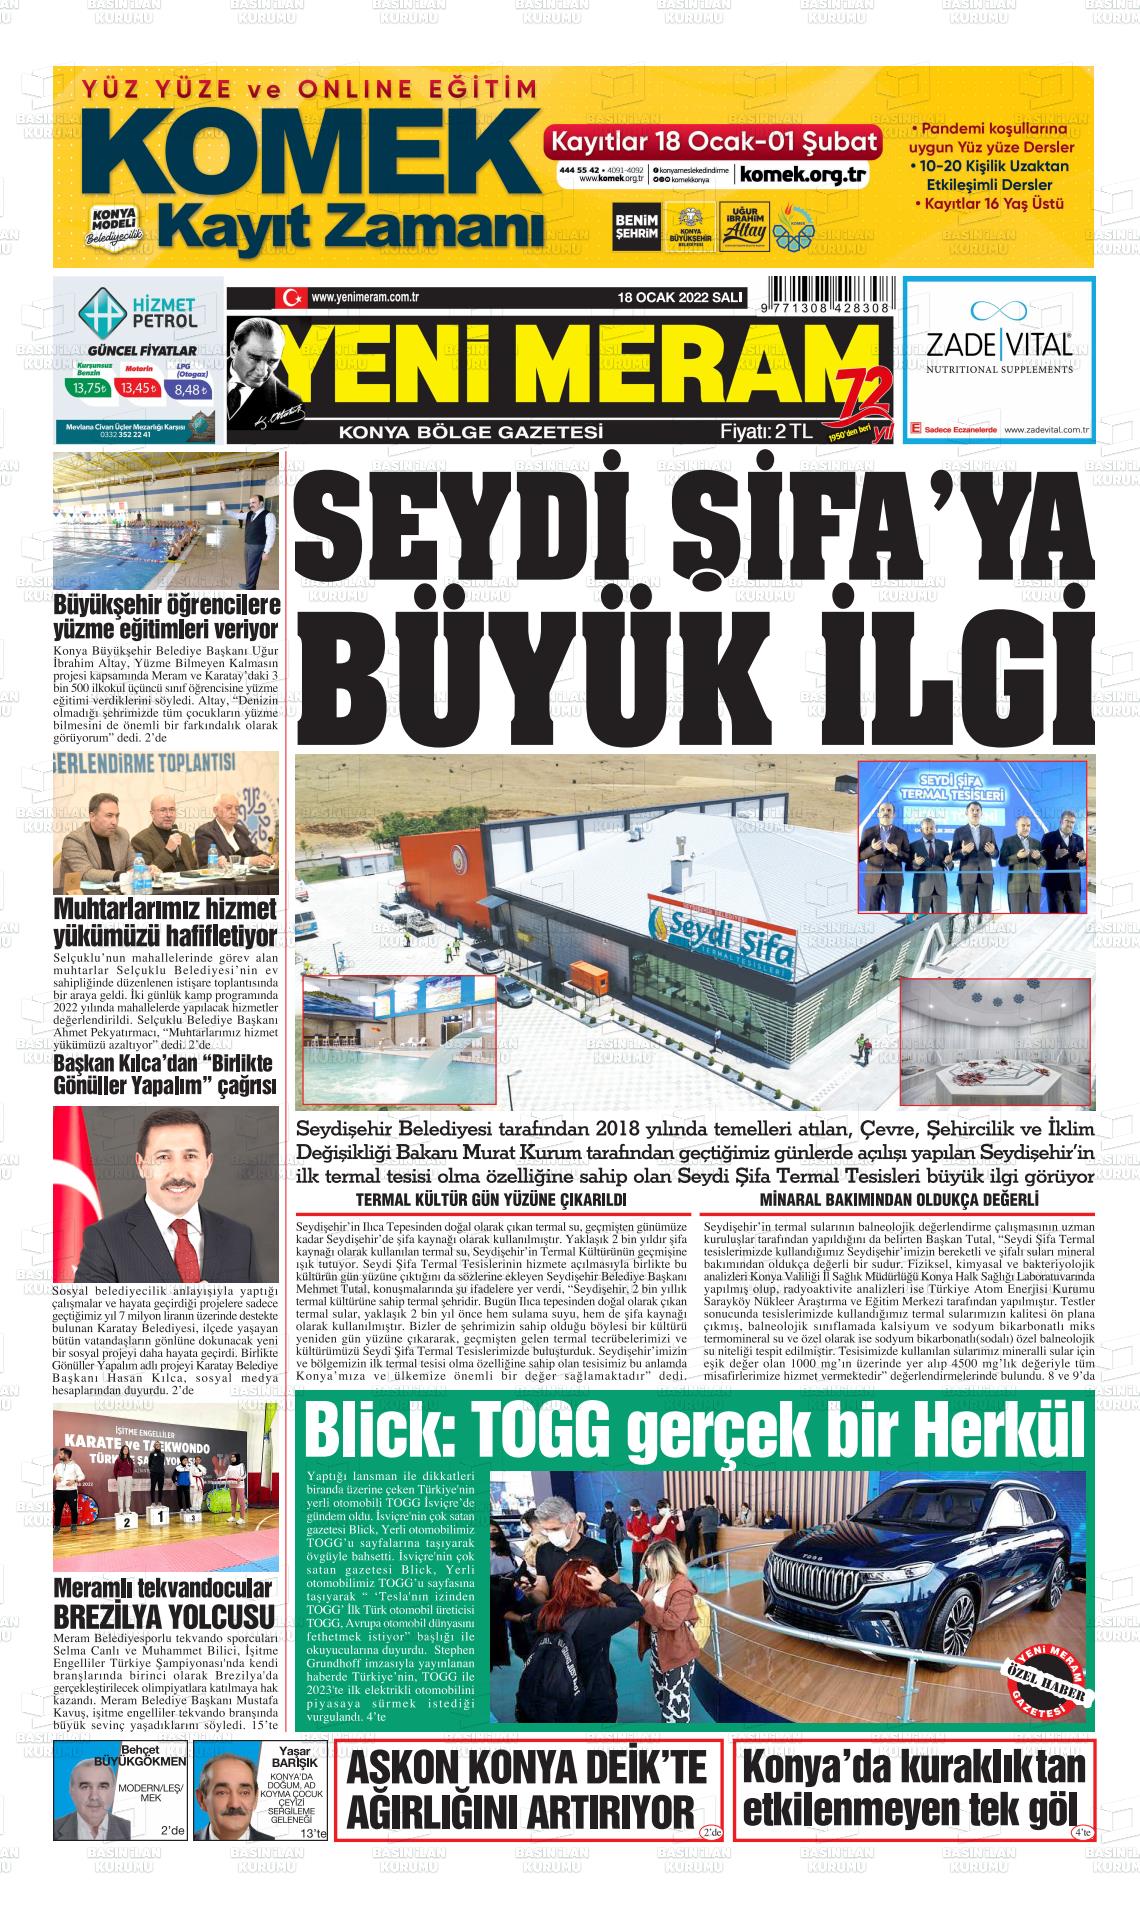 18 Ocak 2022 Yeni Meram Gazete Manşeti